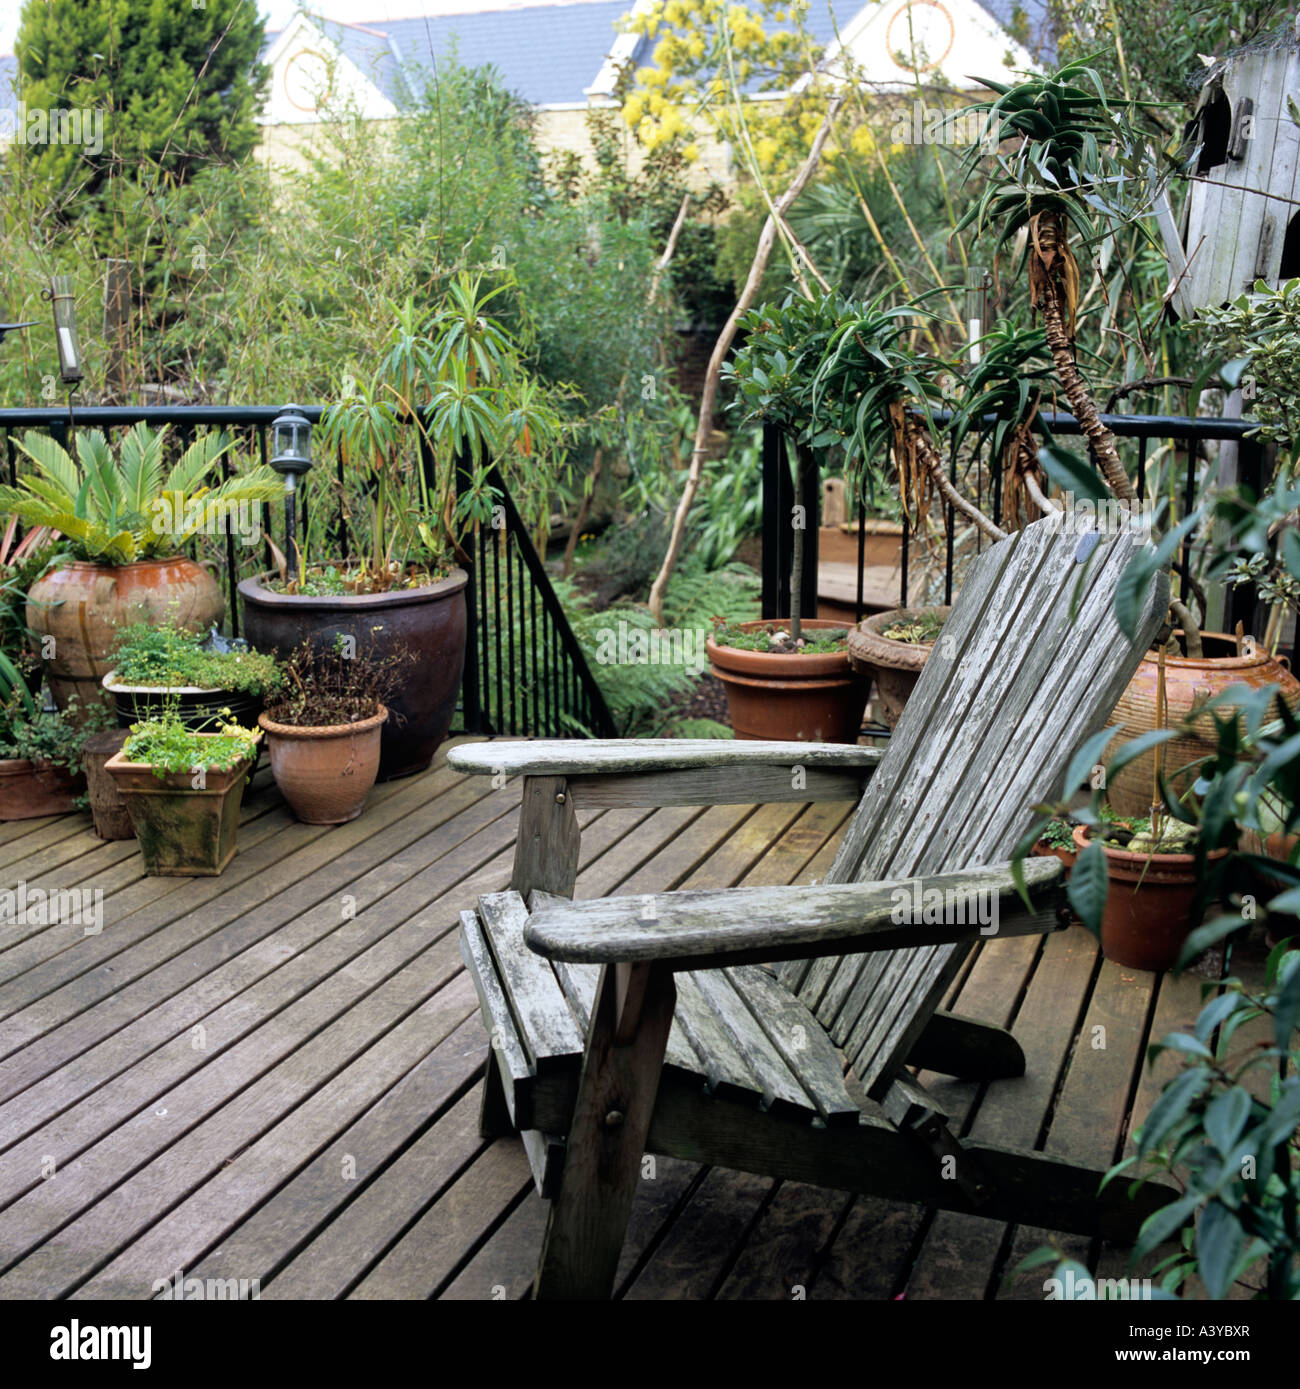 Topfpflanzen und einen alten Garten Sessel auf decking in einem London-Garten Stockfoto